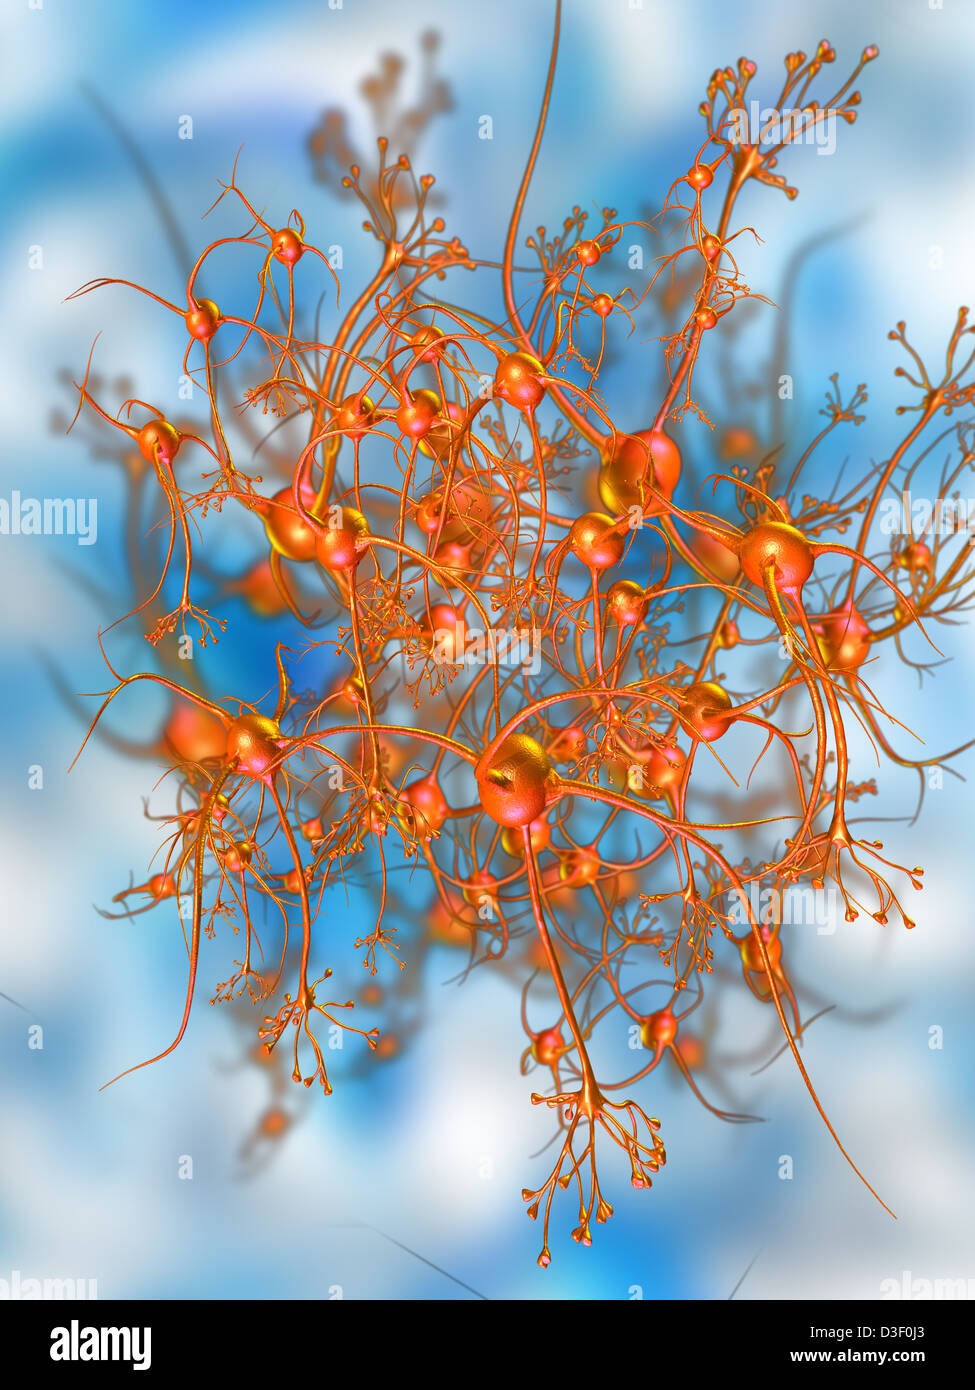 Computer-generierte Abbildung aus einem Netzwerk von Neuronen Stockfoto